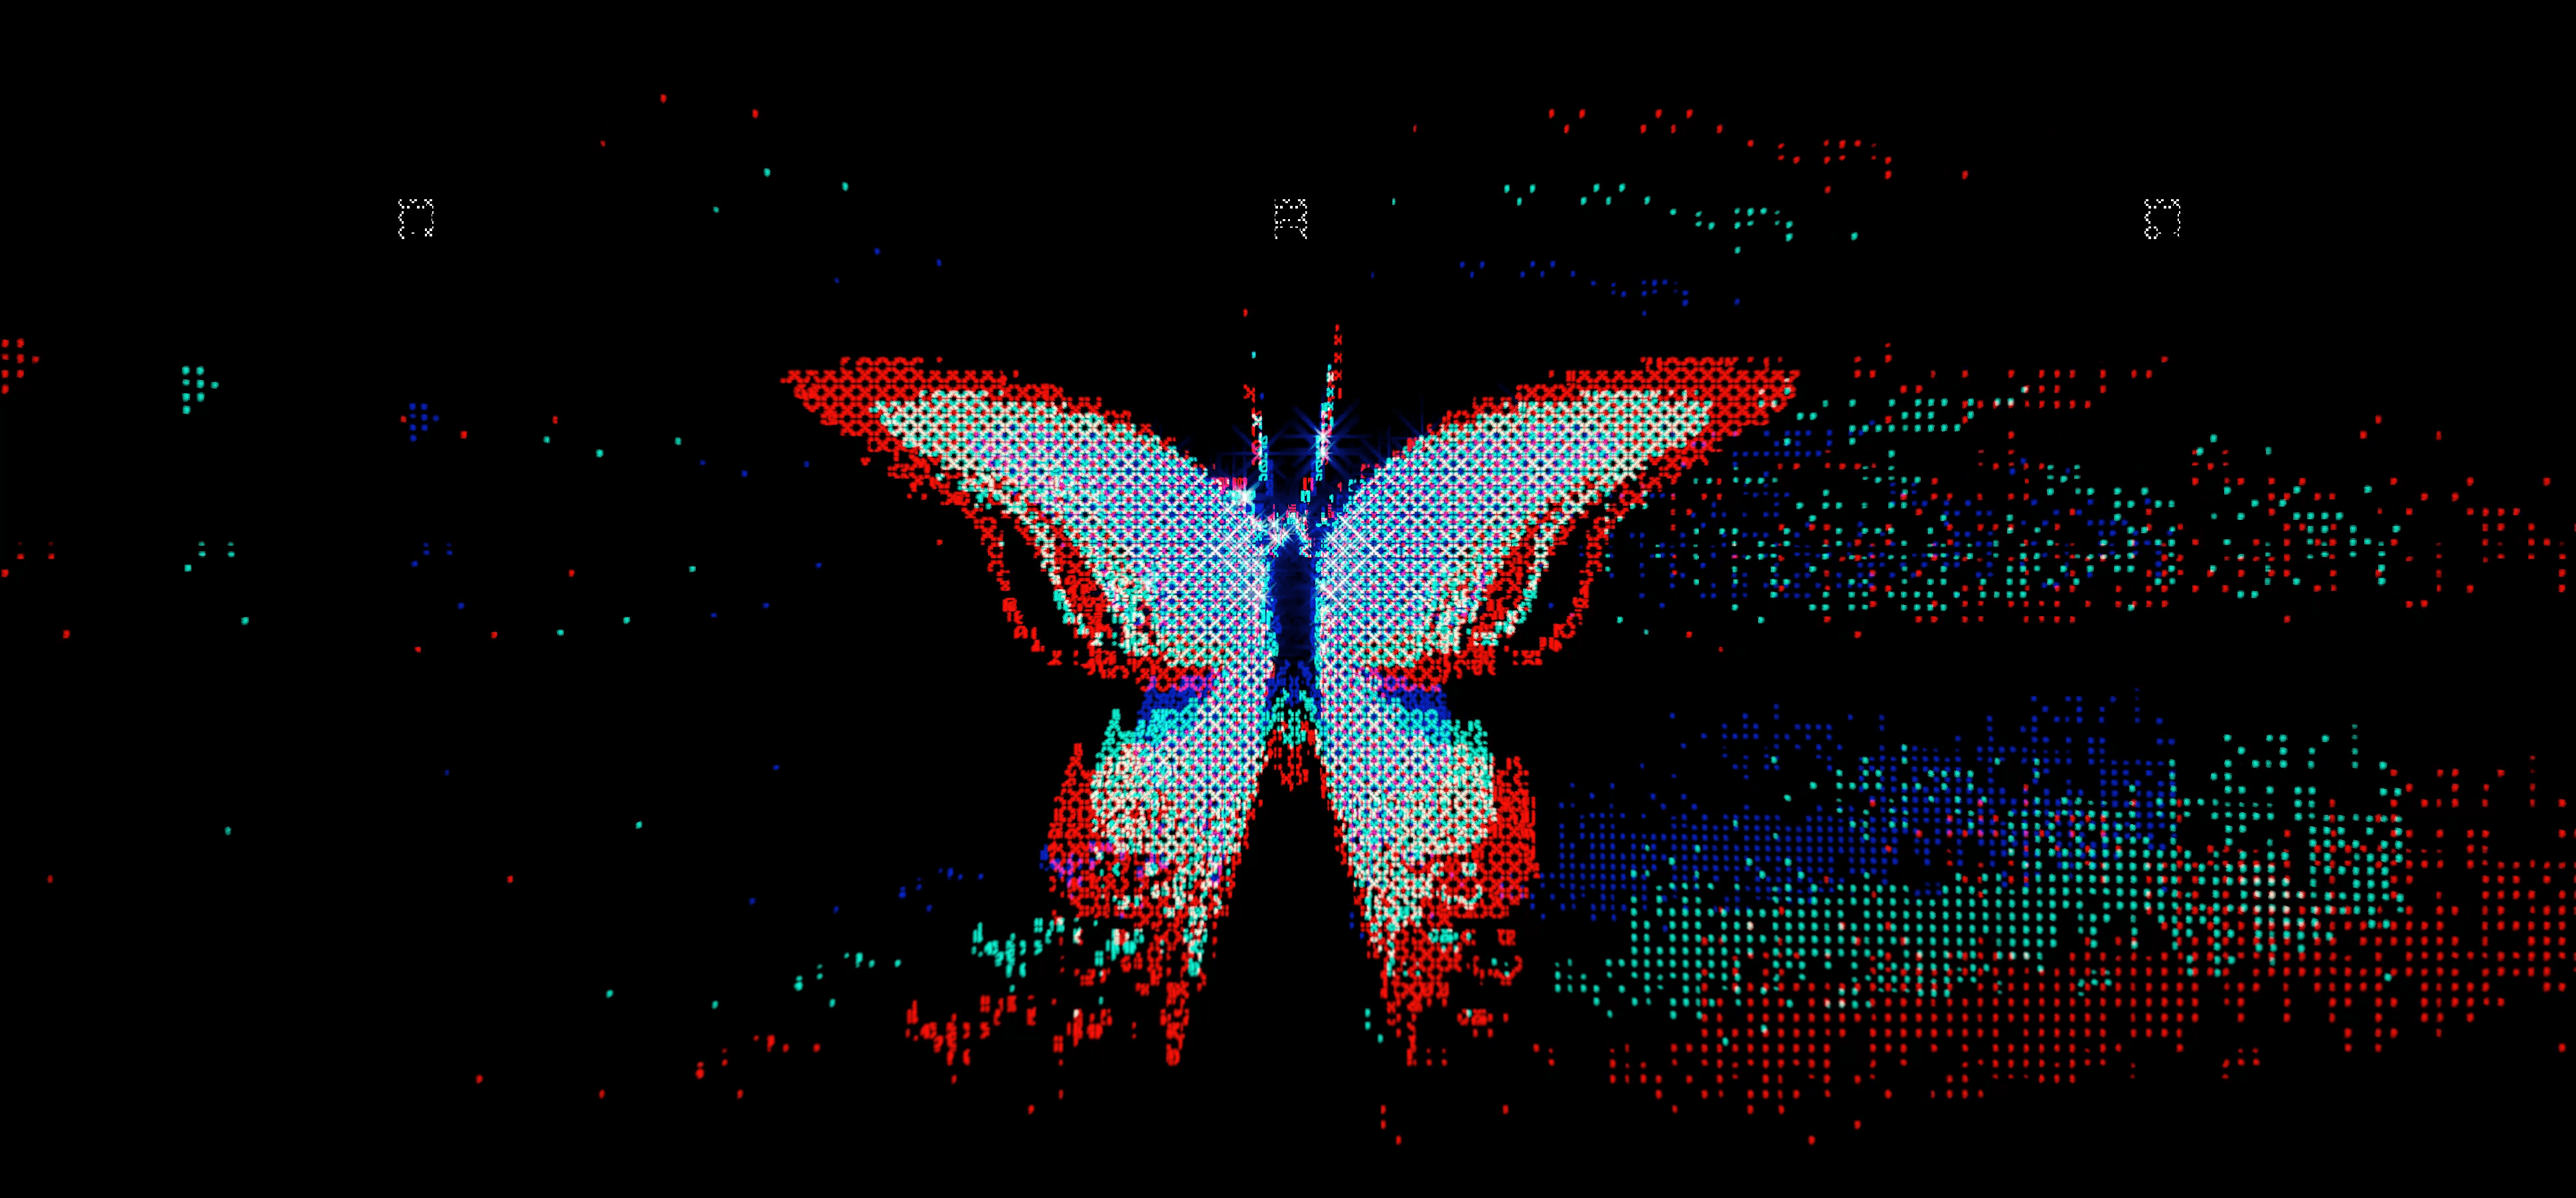 ButterflyDAO